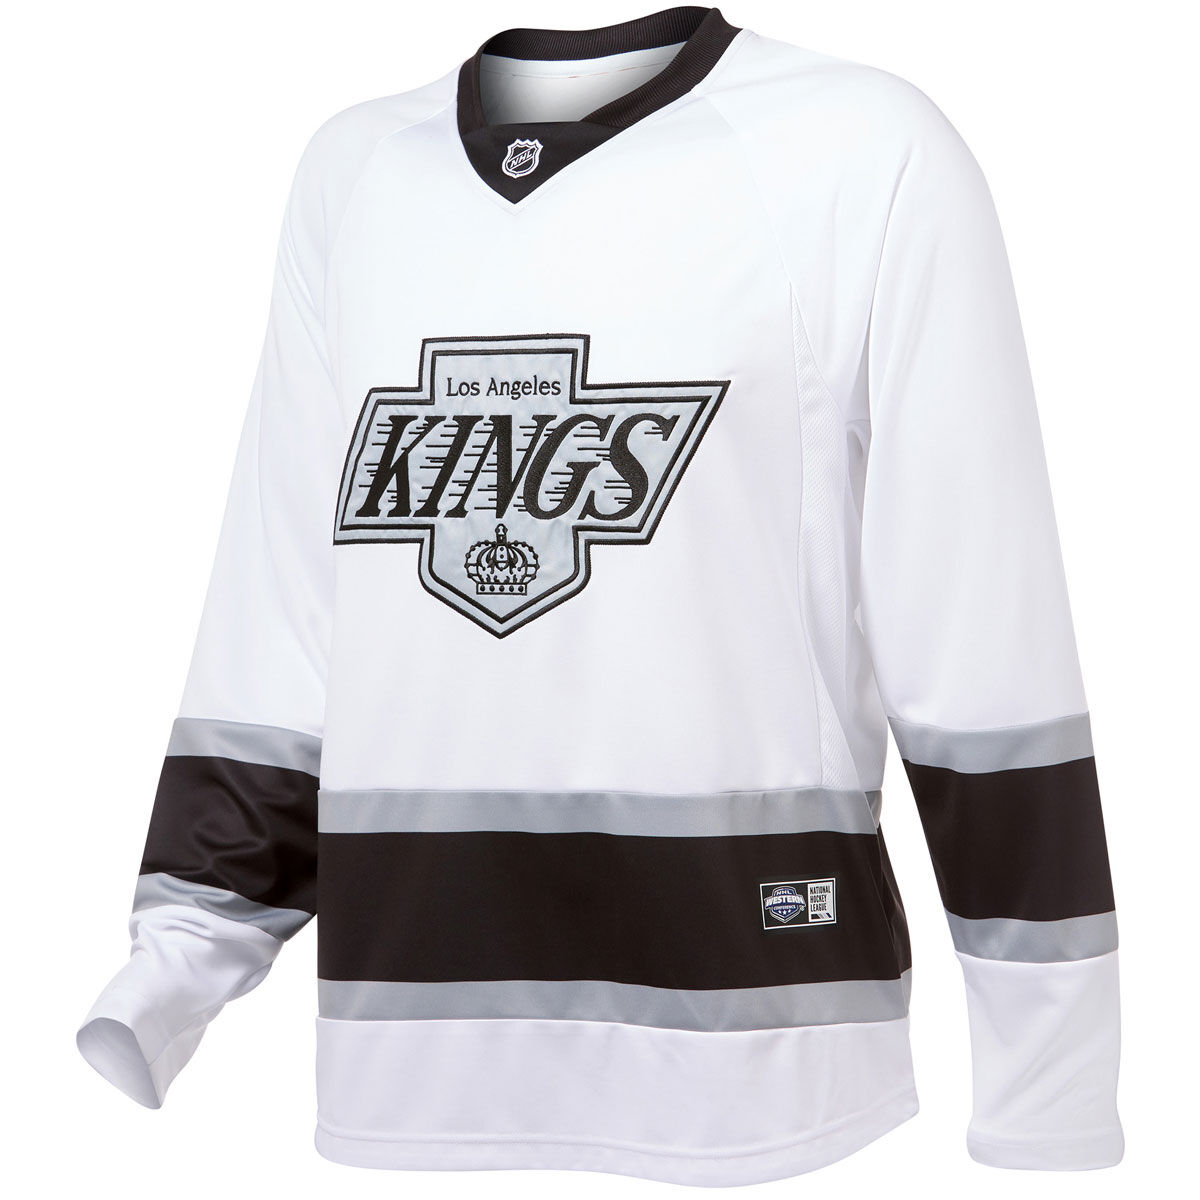 Los Angeles Kings Jerseys, Kings Hockey Jerseys, Authentic Kings